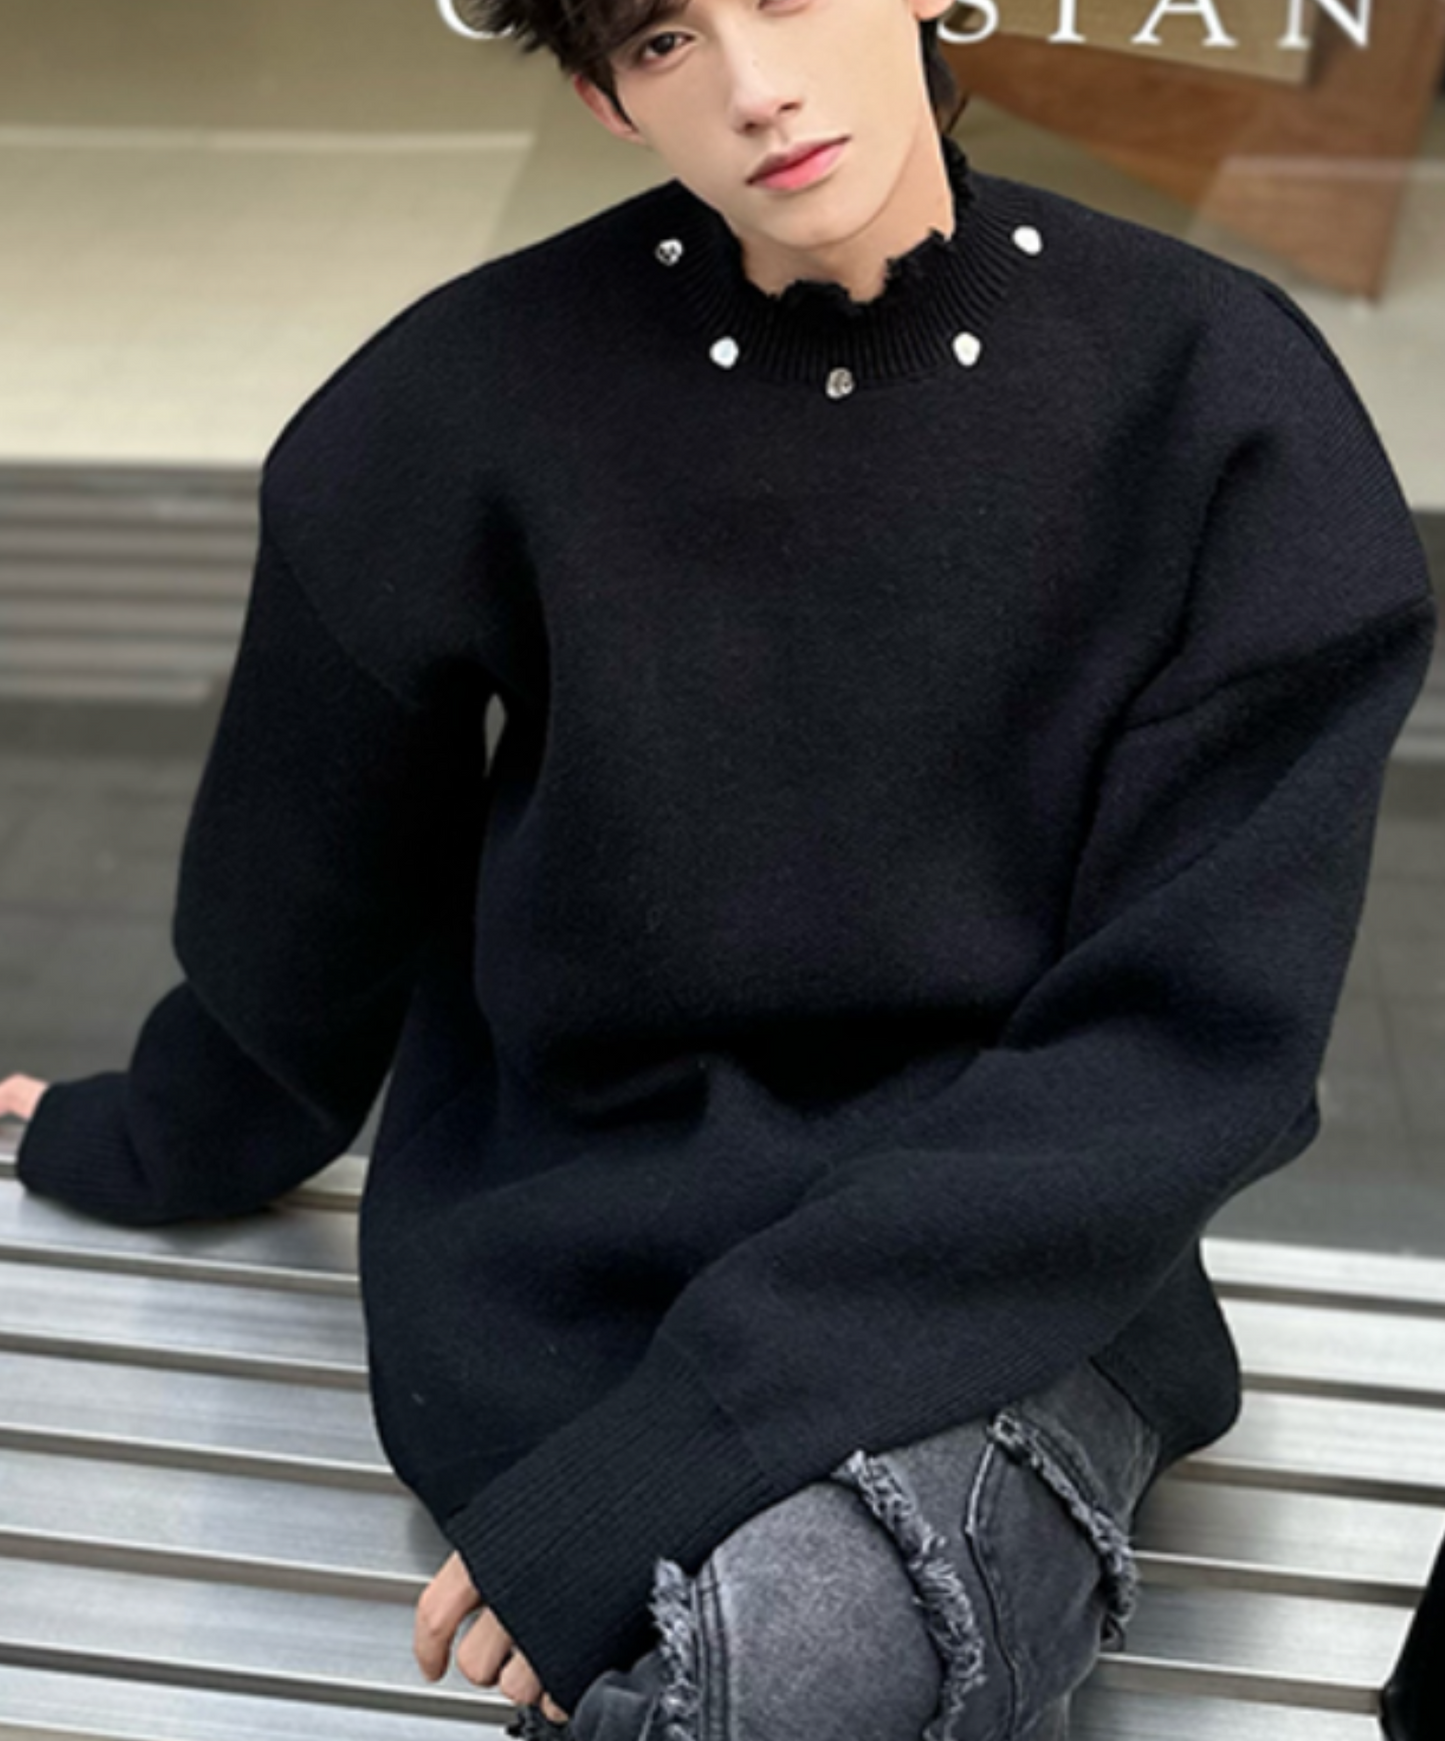 rough cut-out design sweater EN1468